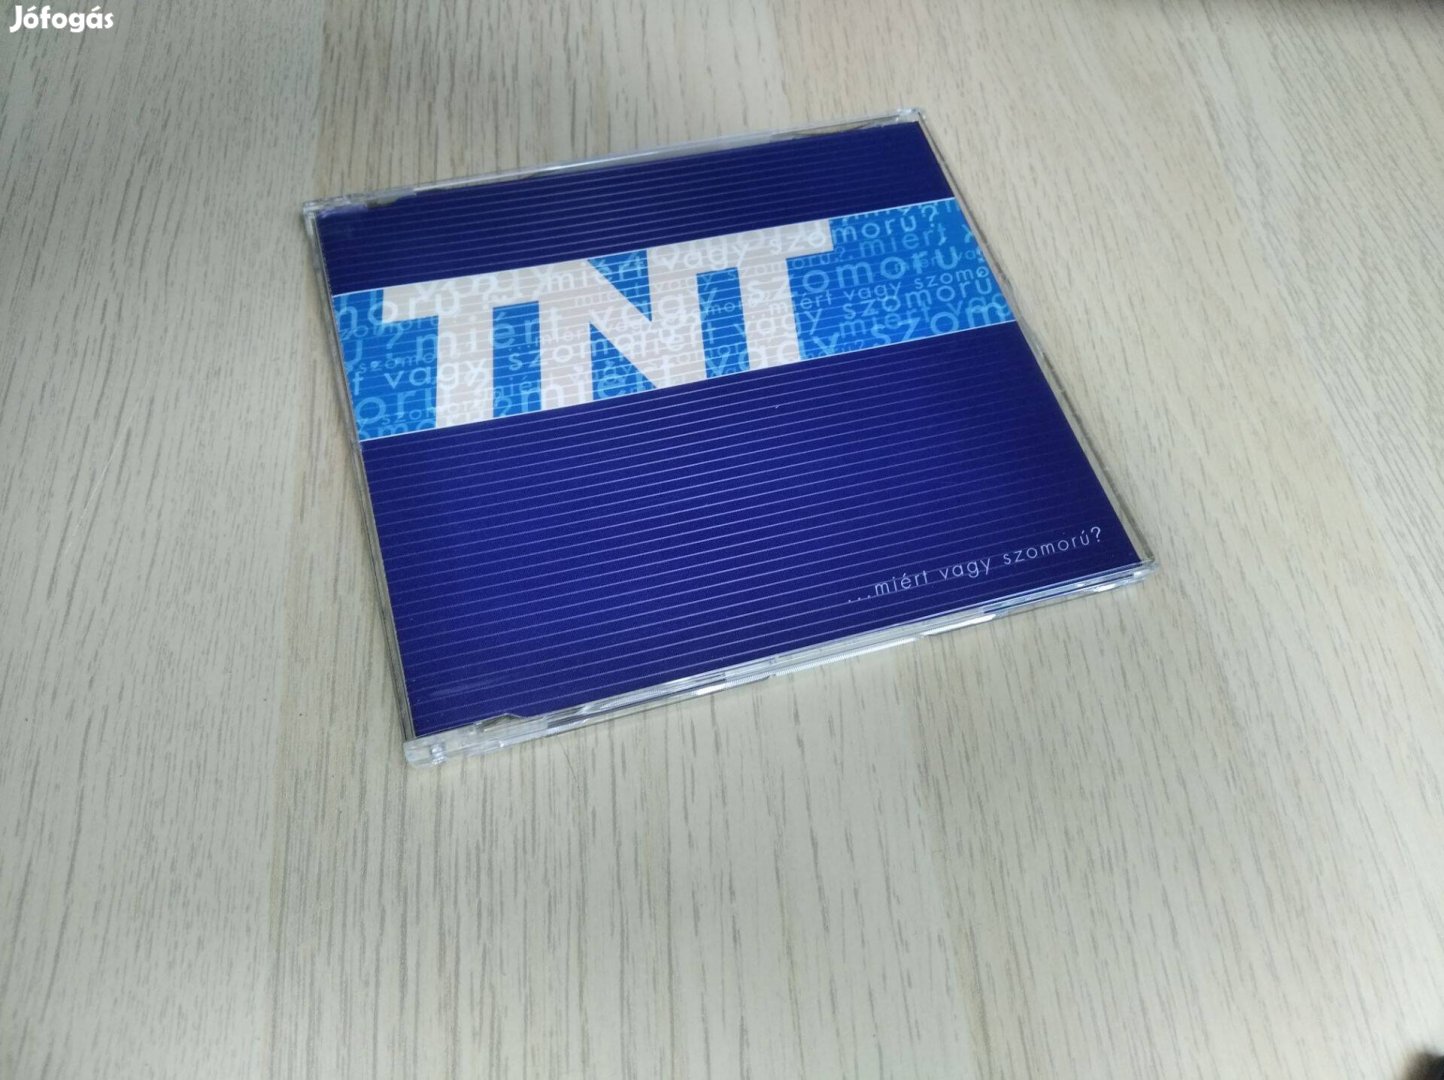 TNT - .Miért Vagy Szomorú? / Maxi CD